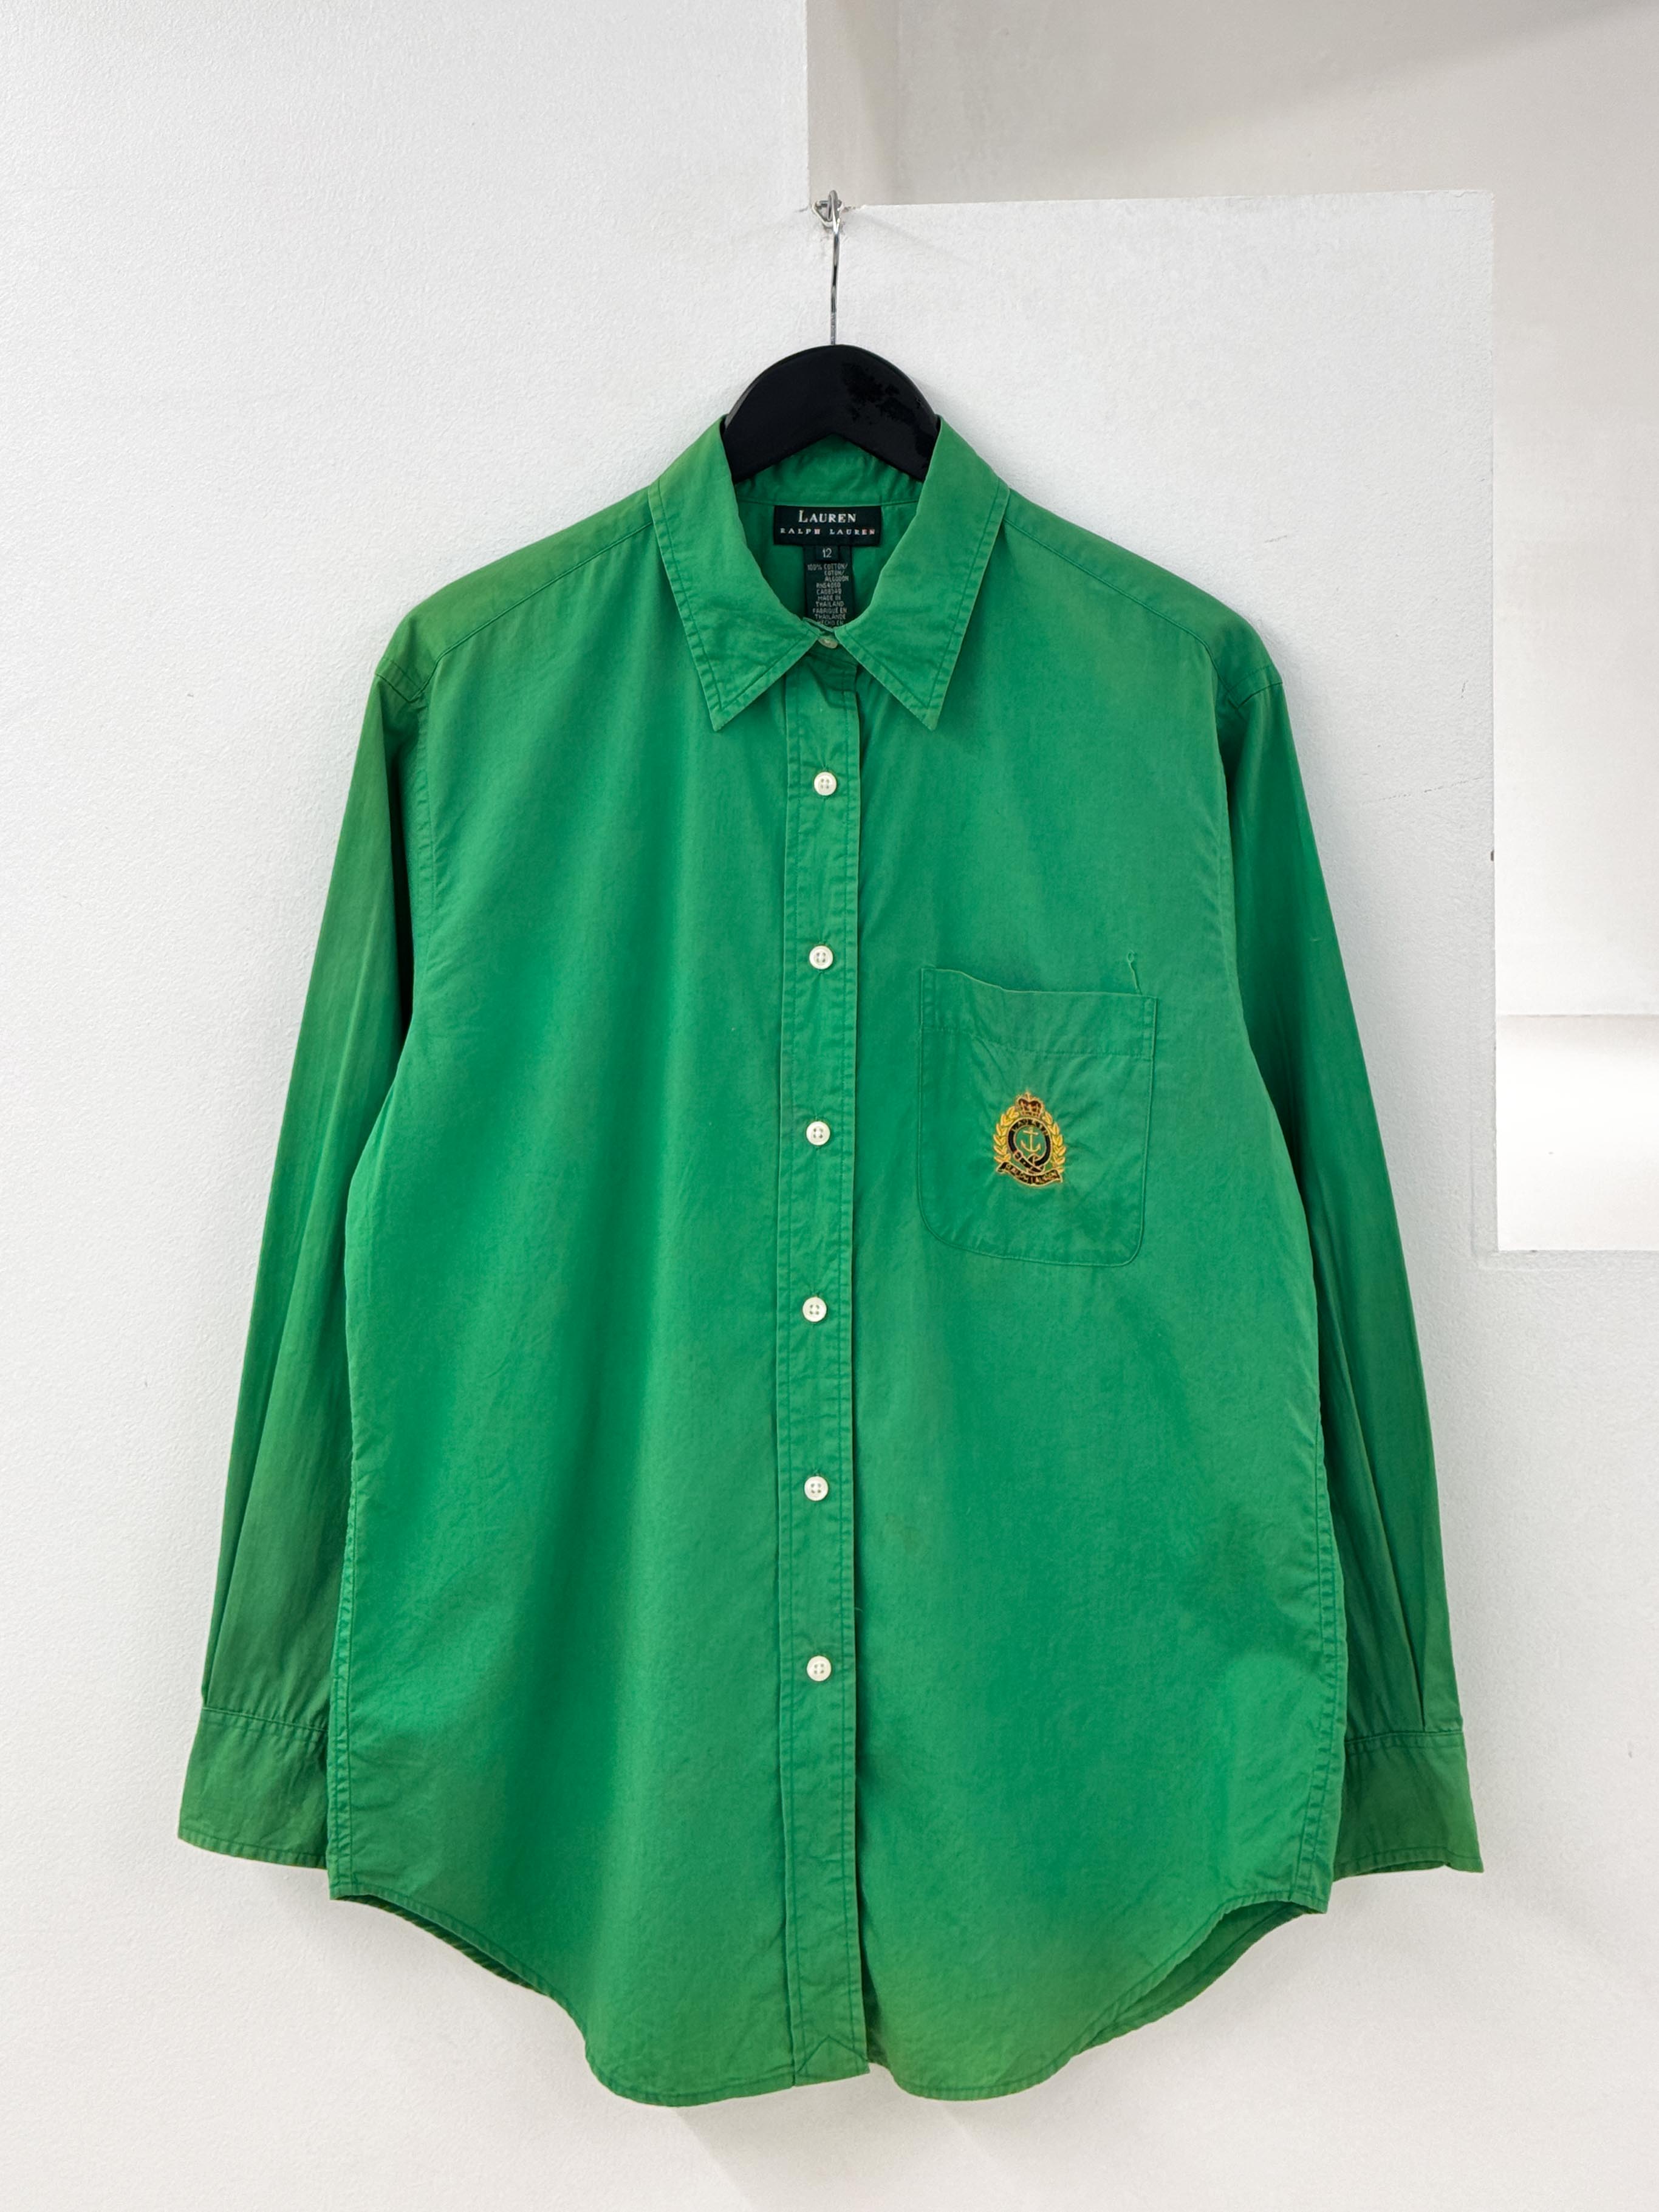 RalphLauren green shirts